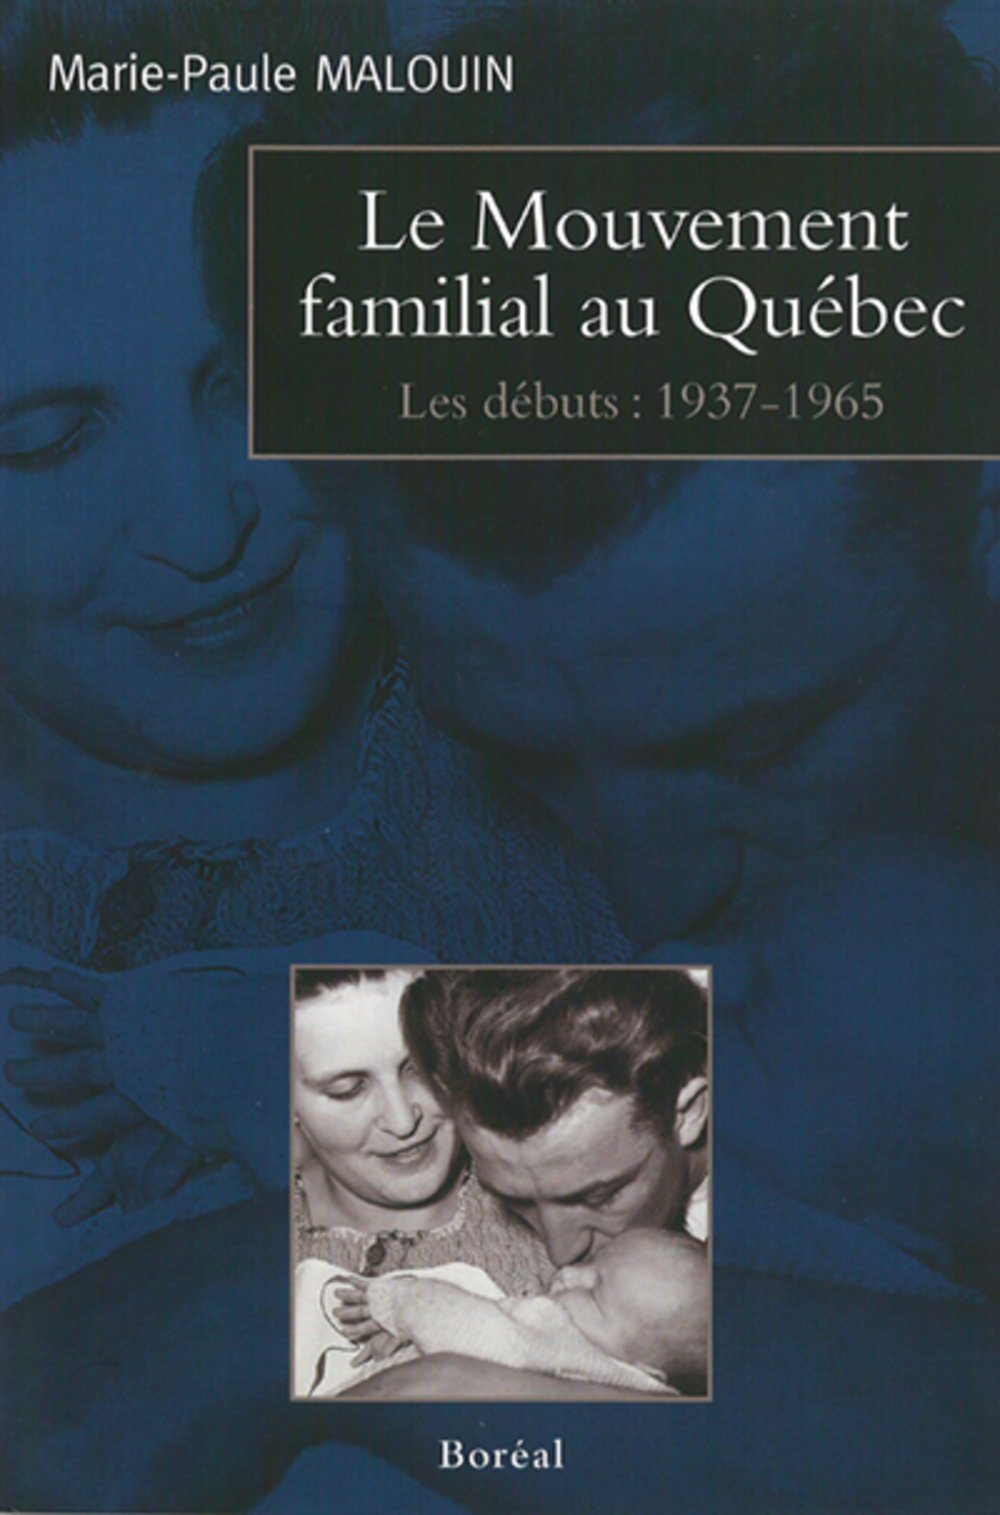 Livre ISBN 2890529371 Le mouvement familial au Québec : Les débuts (1937-1965) (Marie-Paule Malouin)